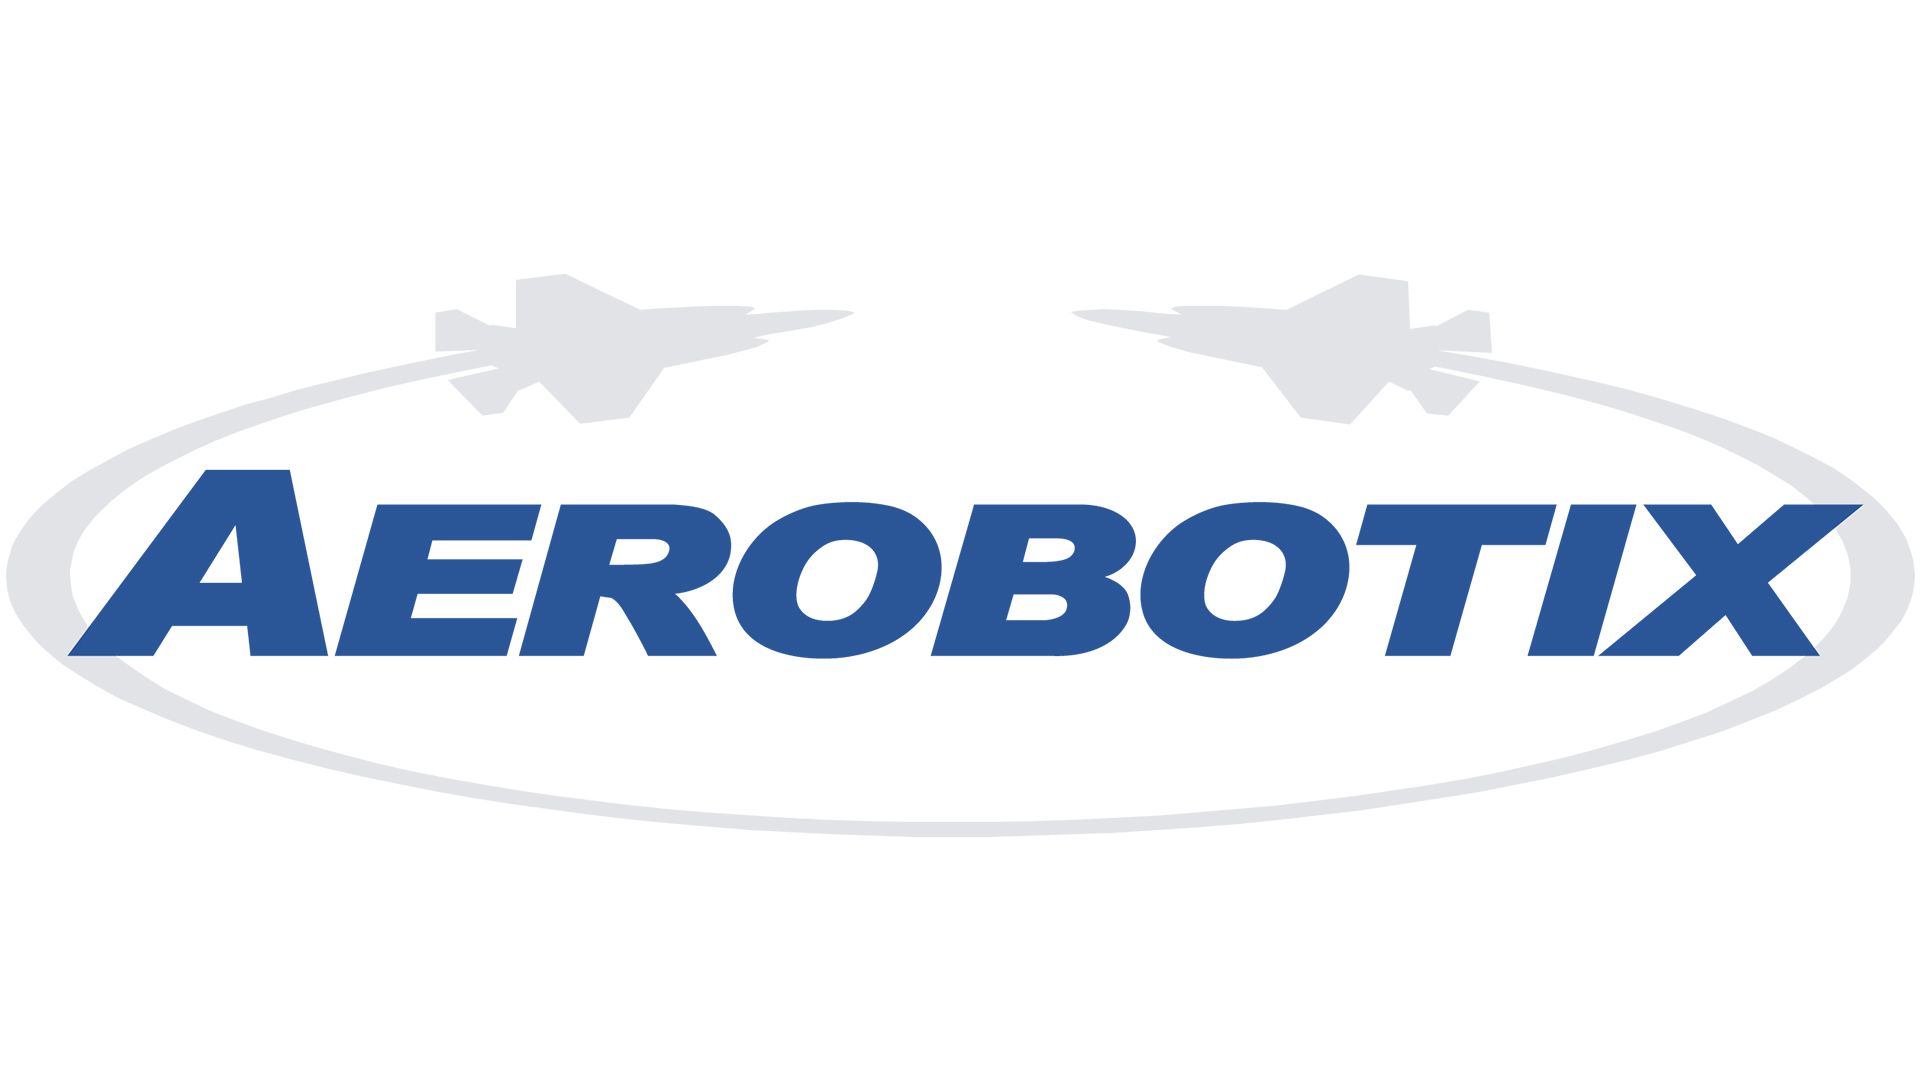 Aerobotix logo depicted on a white background